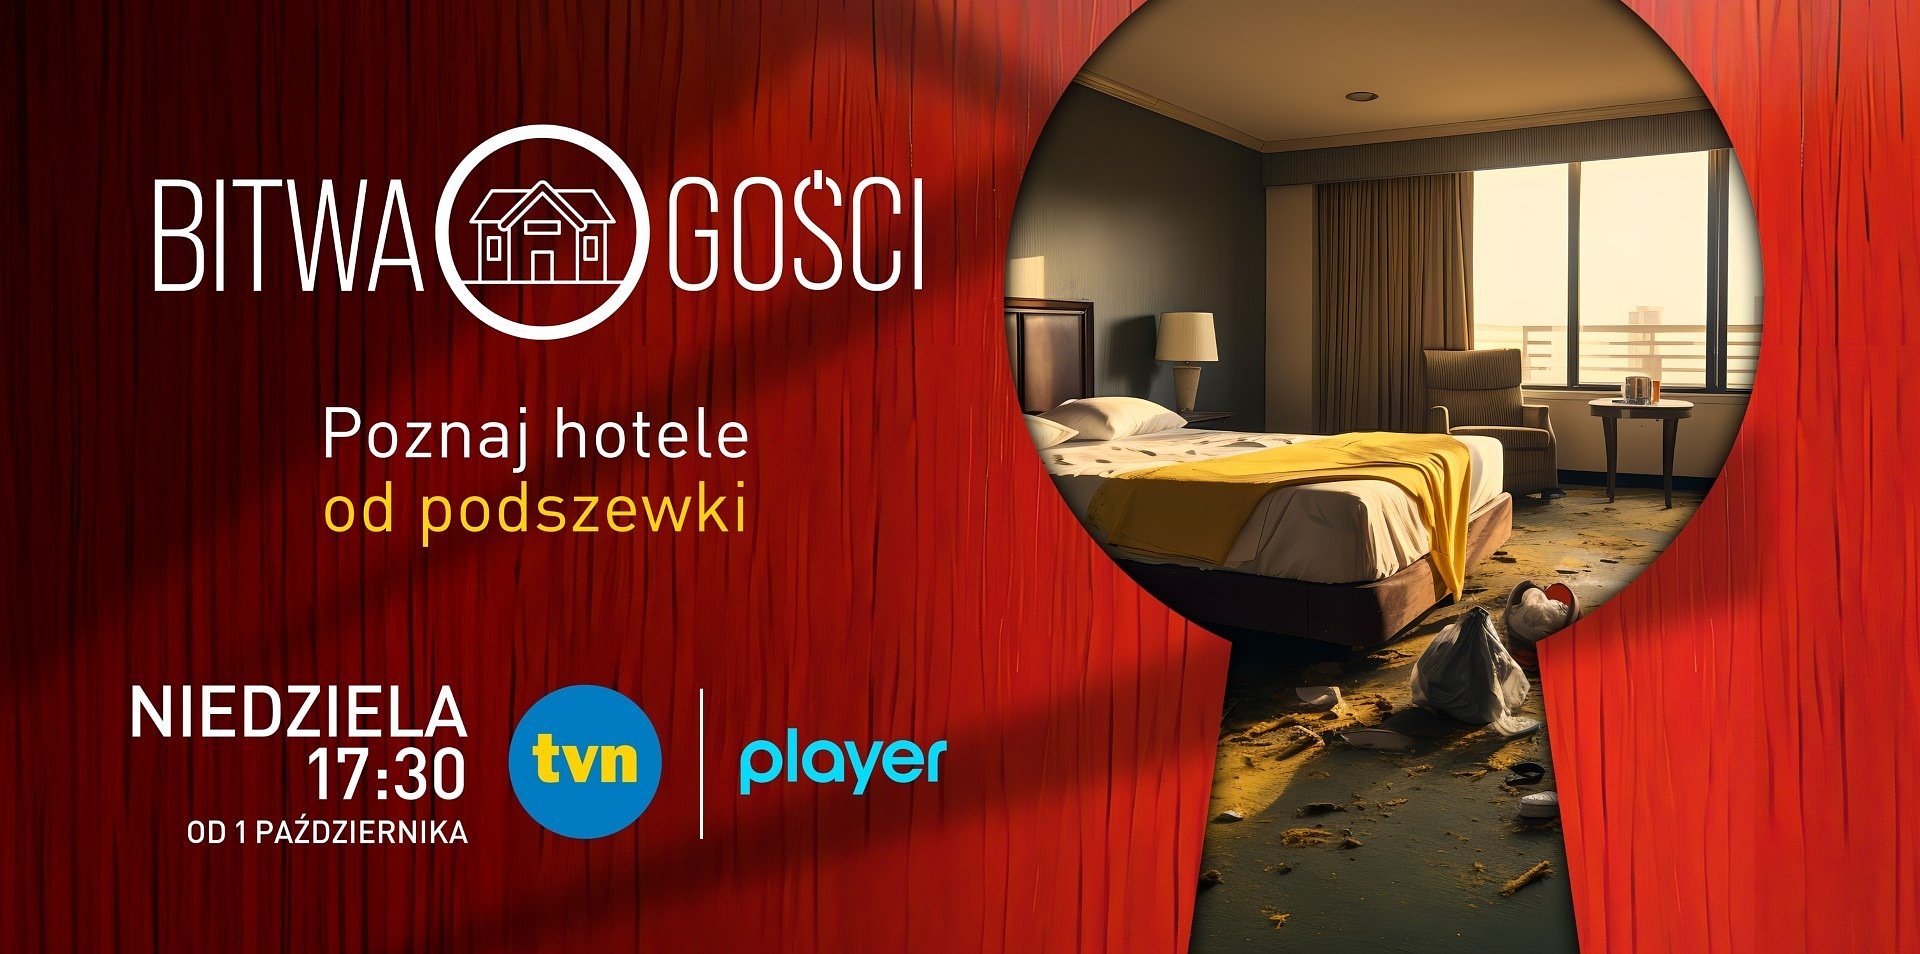 Program „Bitwa o gości” od 1 października w TVN. Hotelarze jadą ocenić konkurencję!